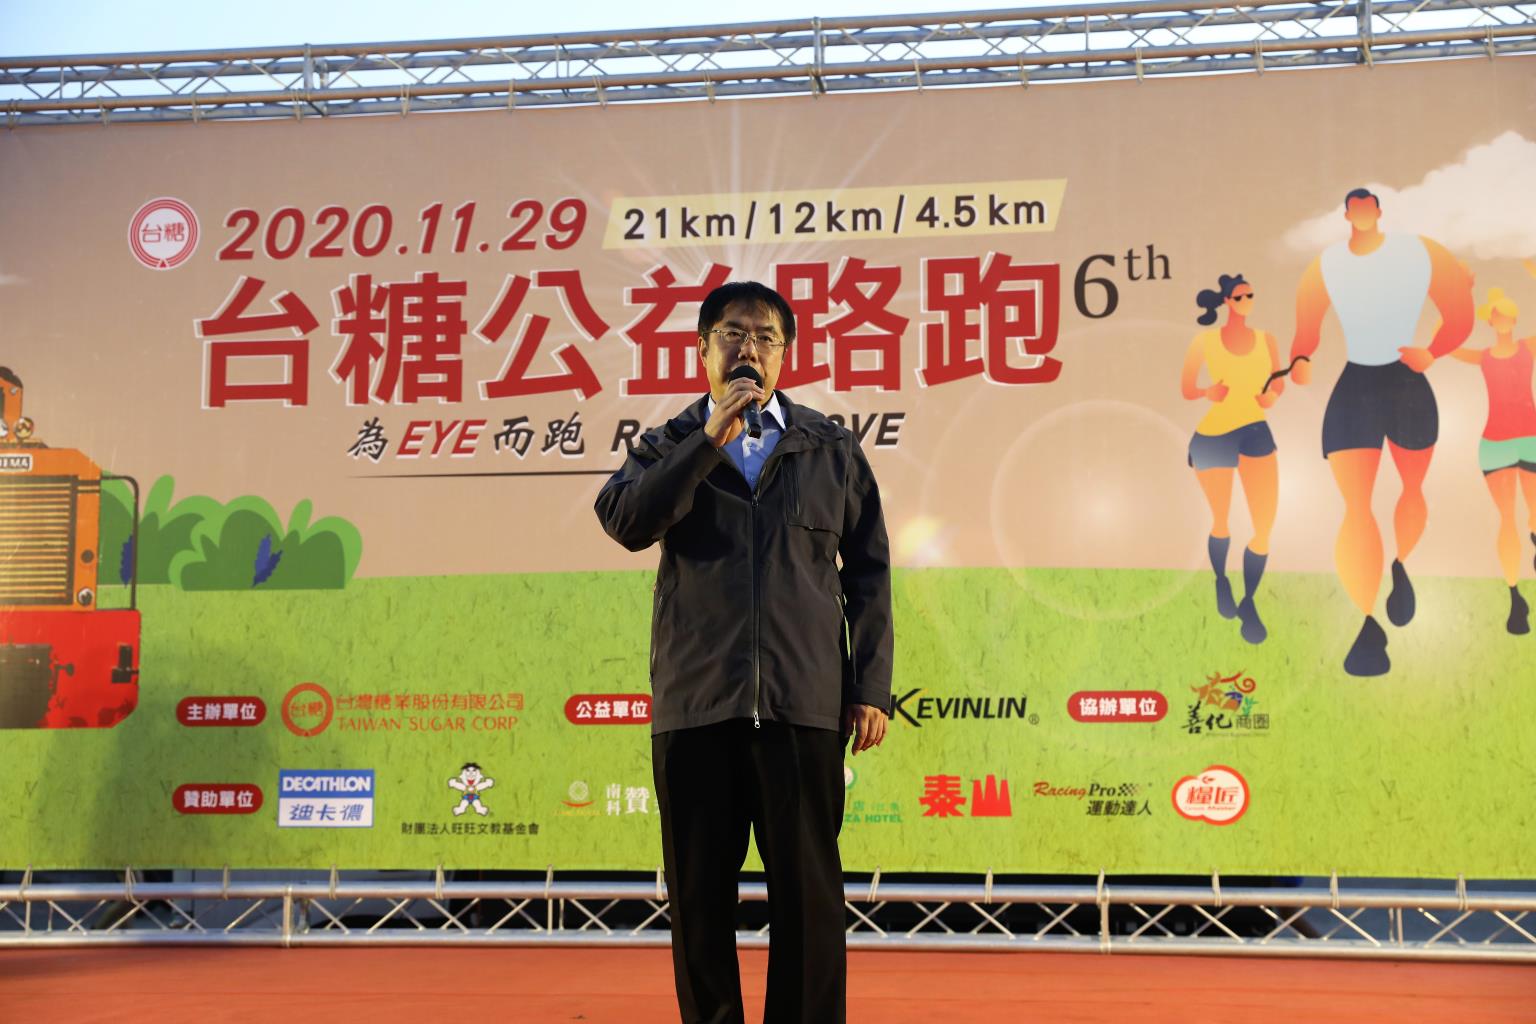 臺南市長黃偉哲出席台糖公益路跑活動。